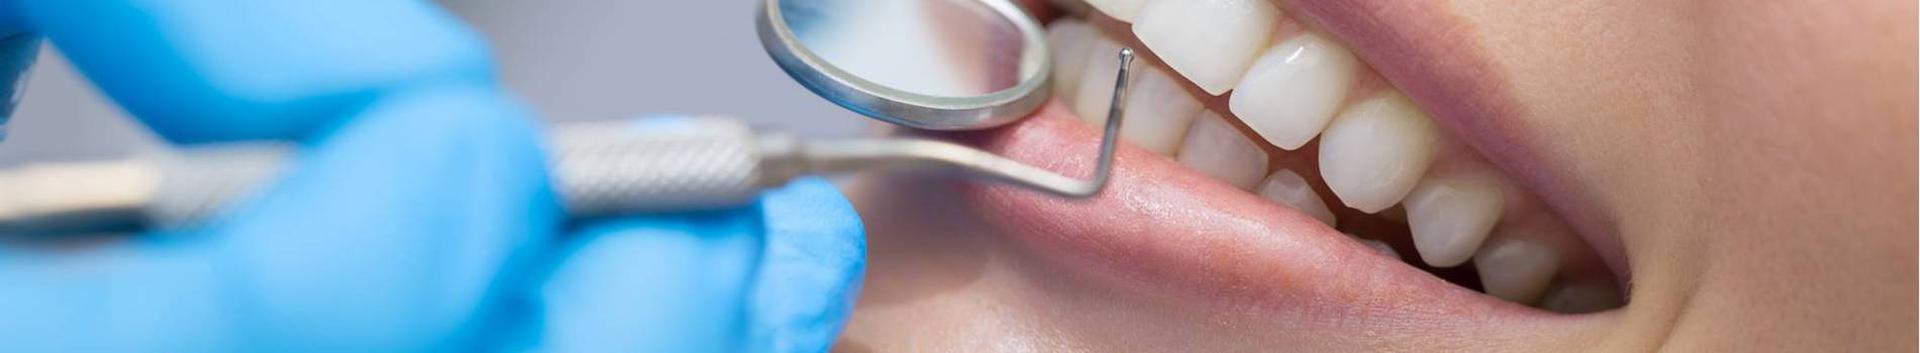 OÜ Luukas K. K. põhitegevuseks on hambaravi teenused. Samuti osutatakse eriarstiabi teenuseid (amb. pediaatria-, amb. reumatoloogia-, amb. üldkirurgia-, amb....